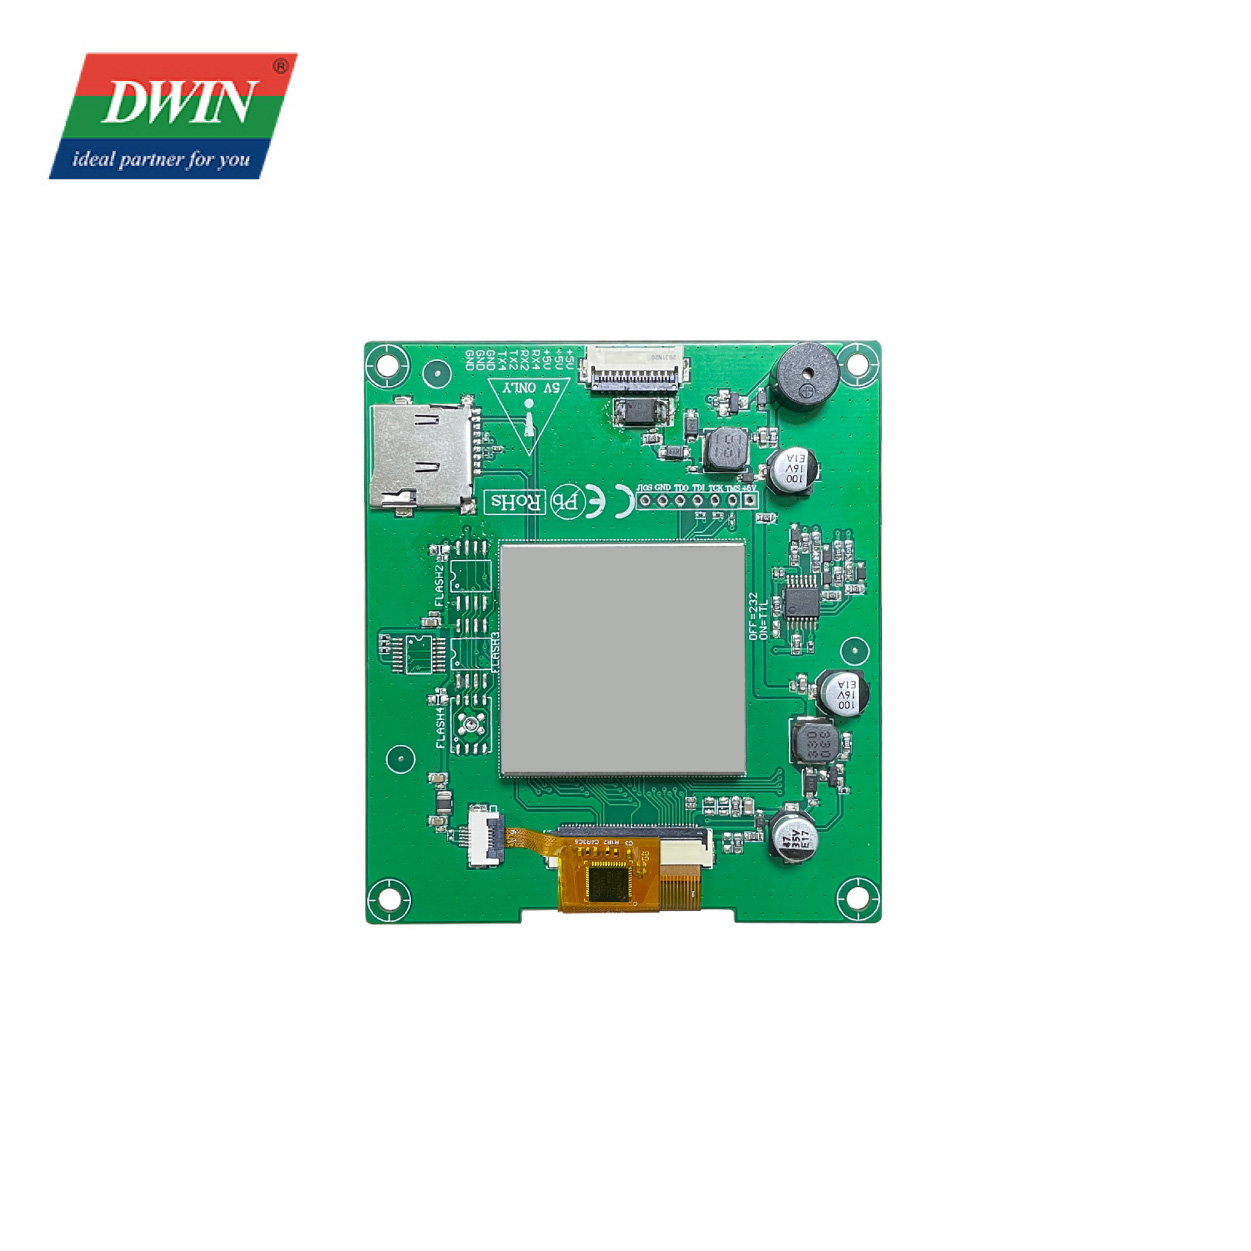 2.1 Modfedd Cylchlythyr Smart LCD DMG48480C021_03W (Gradd Fasnachol)